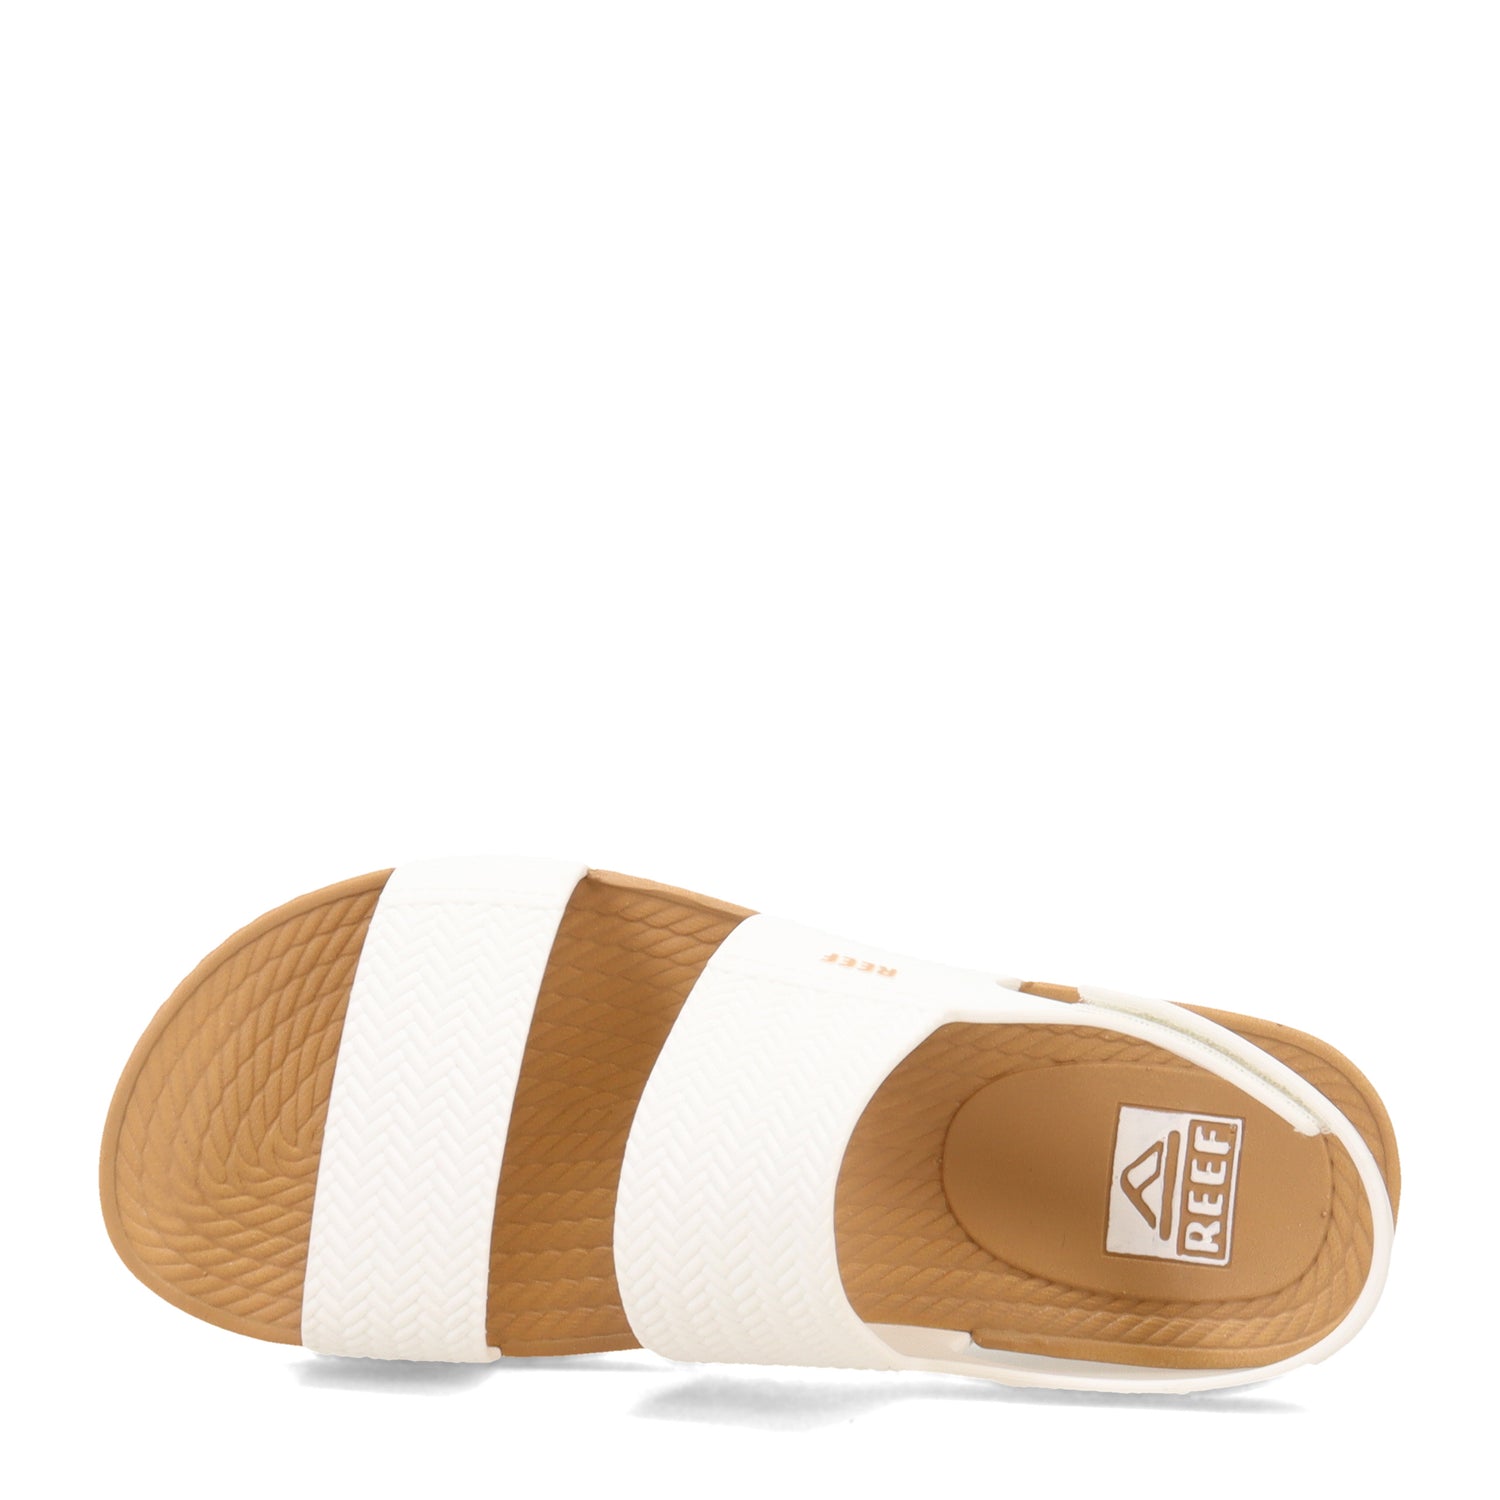 Peltz Shoes  Women's Reef Water Vista Sandal White/Tan CI8574